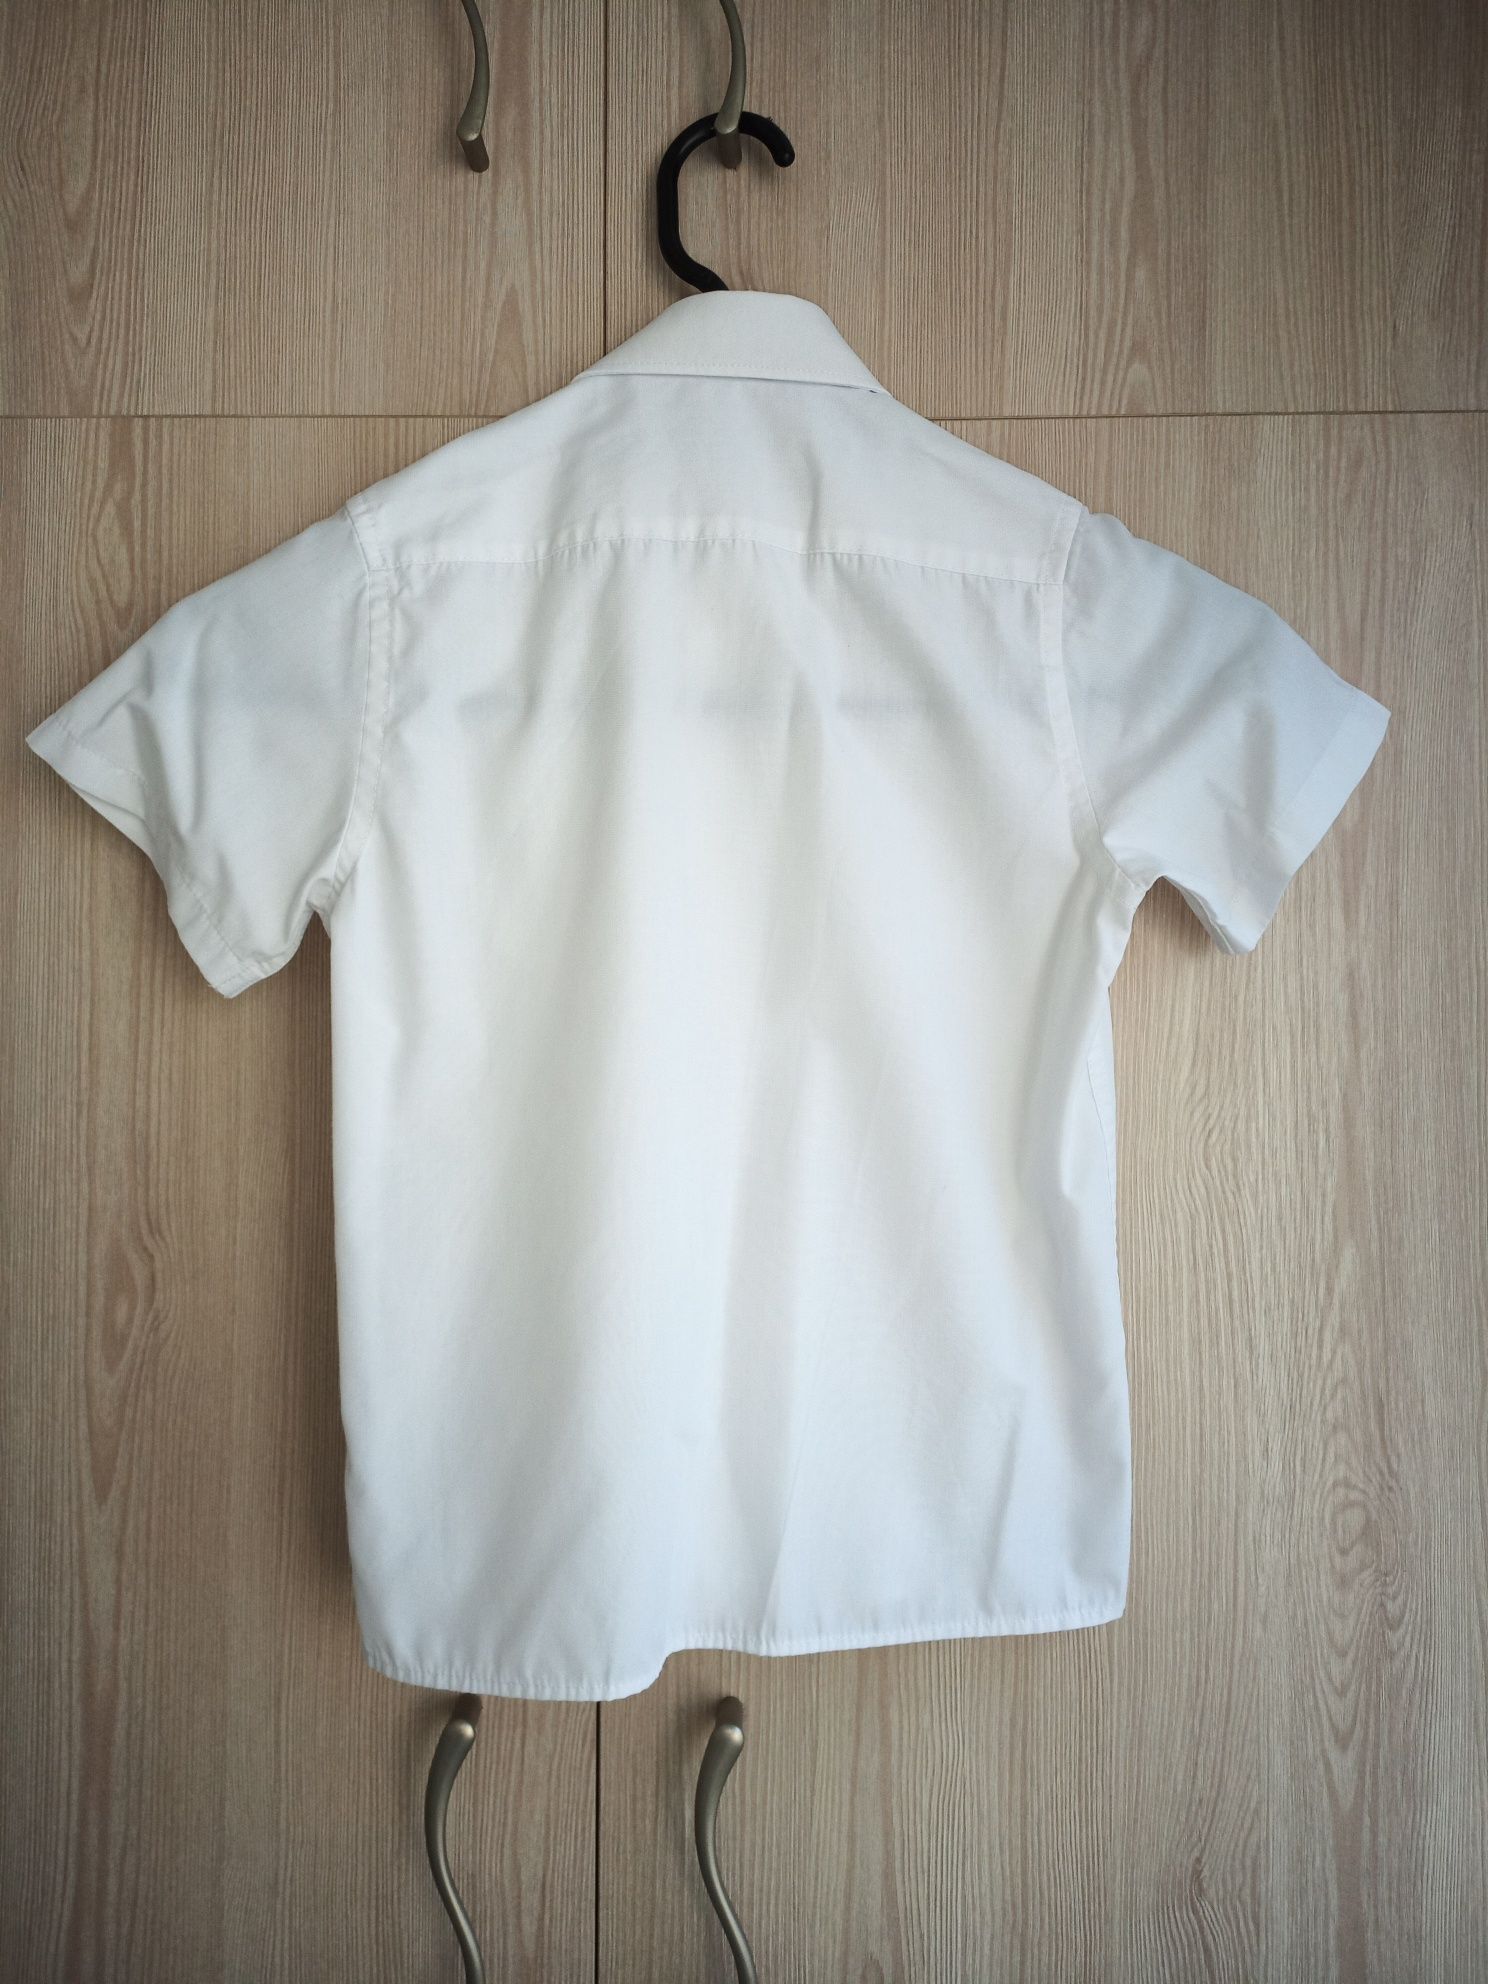 Белая рубашка 2 шт + желетка